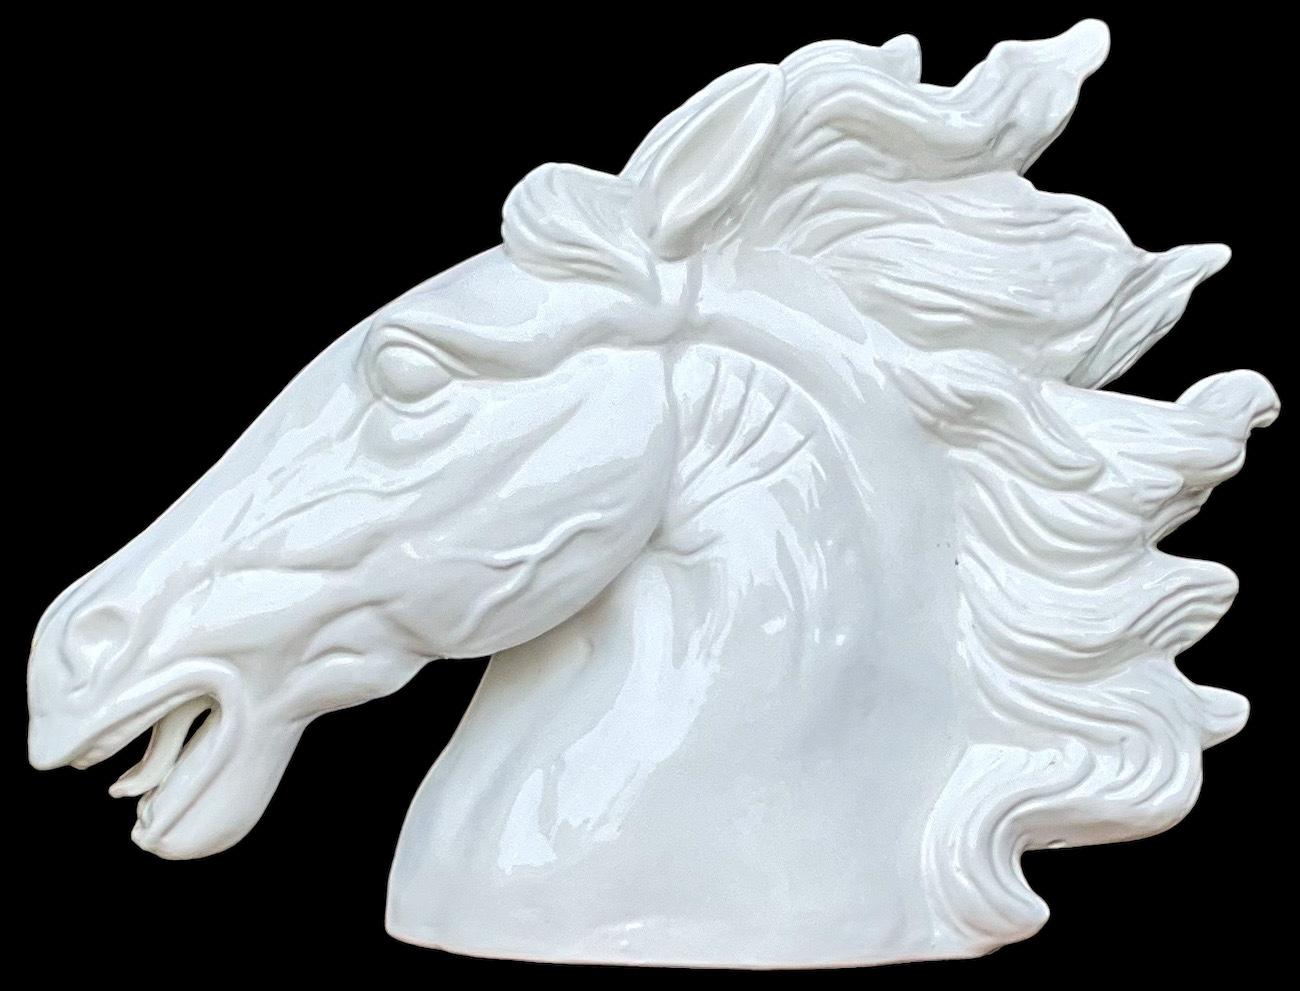 Il s'agit d'un buste de cheval italien blanc majestueux à grande échelle. Il est sans marque et en très bon état. Il date vraisemblablement de la fin du XXe siècle.